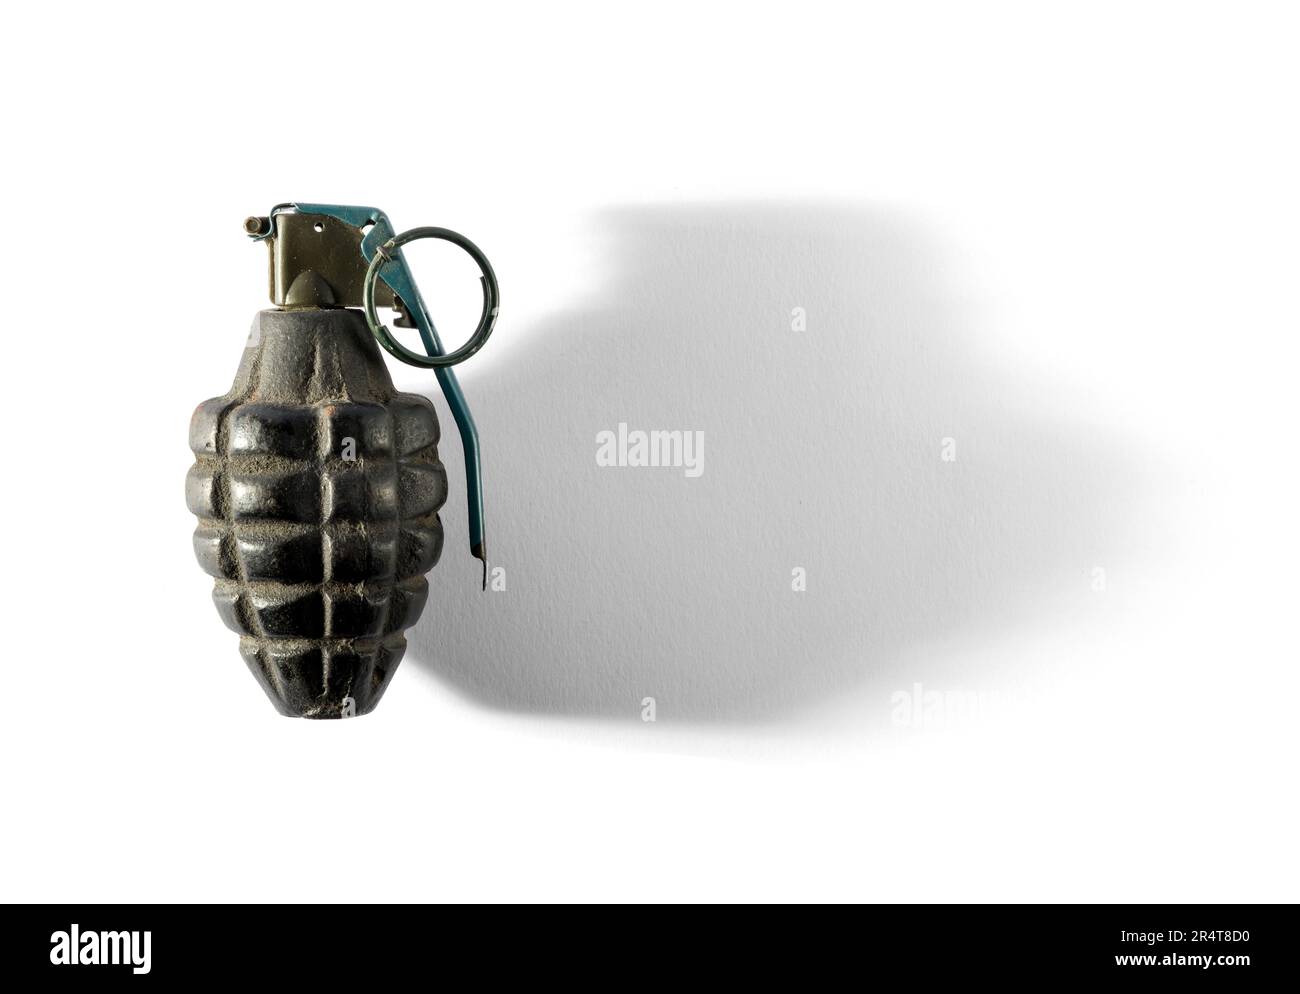 Vue de dessus de la grenade à main en métal avec clip de sécurité placé sur fond blanc Banque D'Images